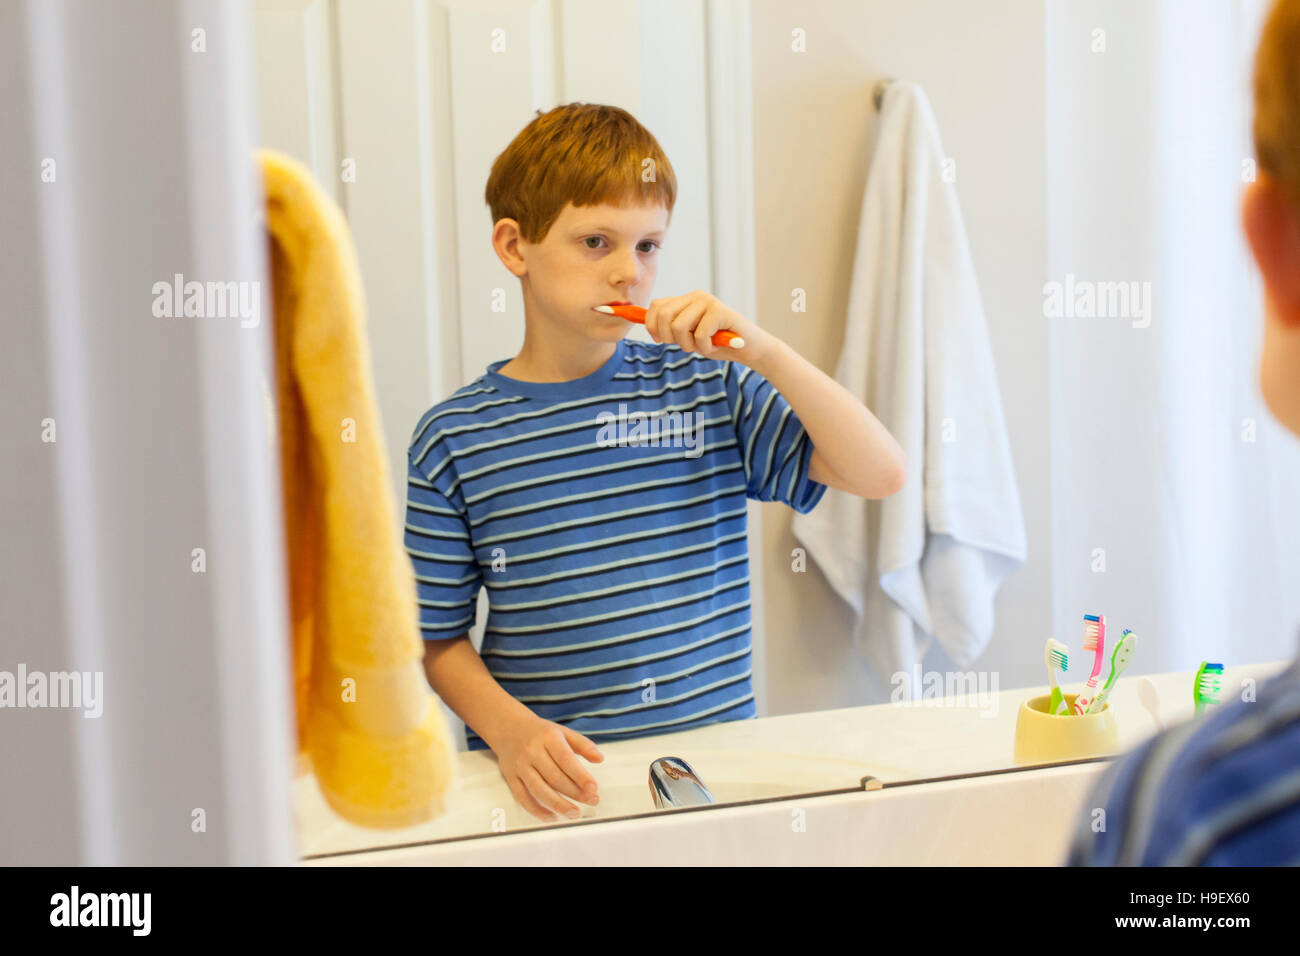 Reflexion des kaukasischen jungen Zähneputzen im Spiegel Stockfoto